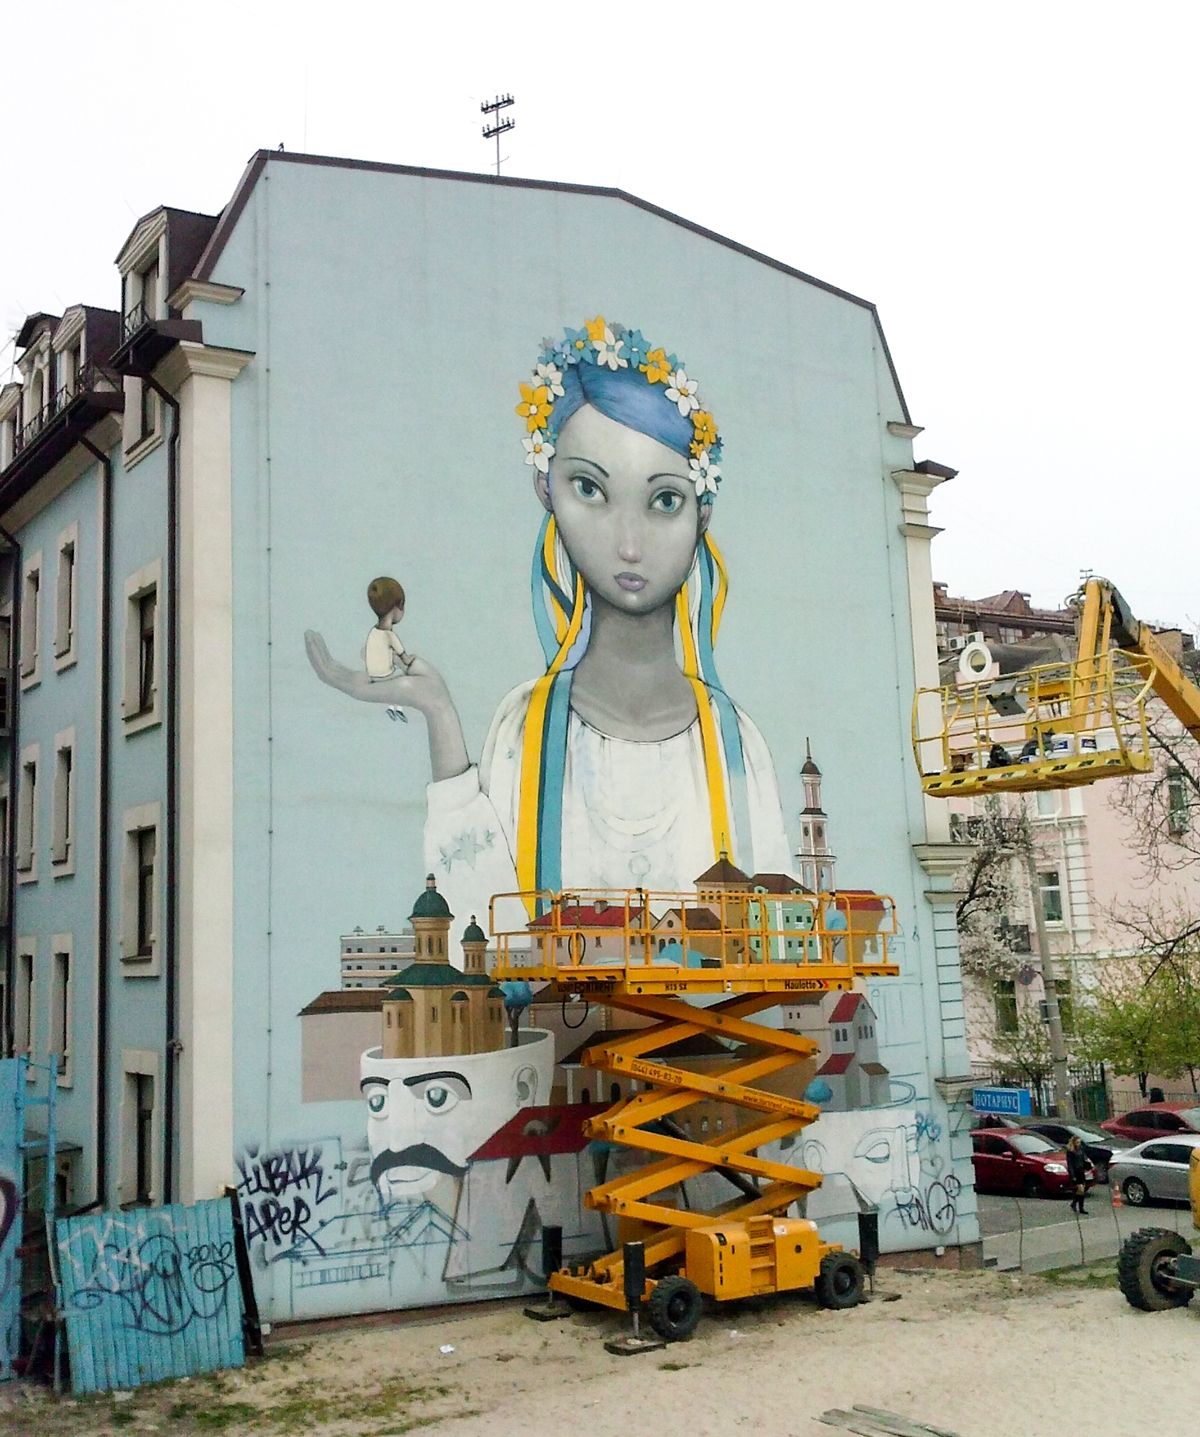 Mural graffiti "Vidrodzhennia"